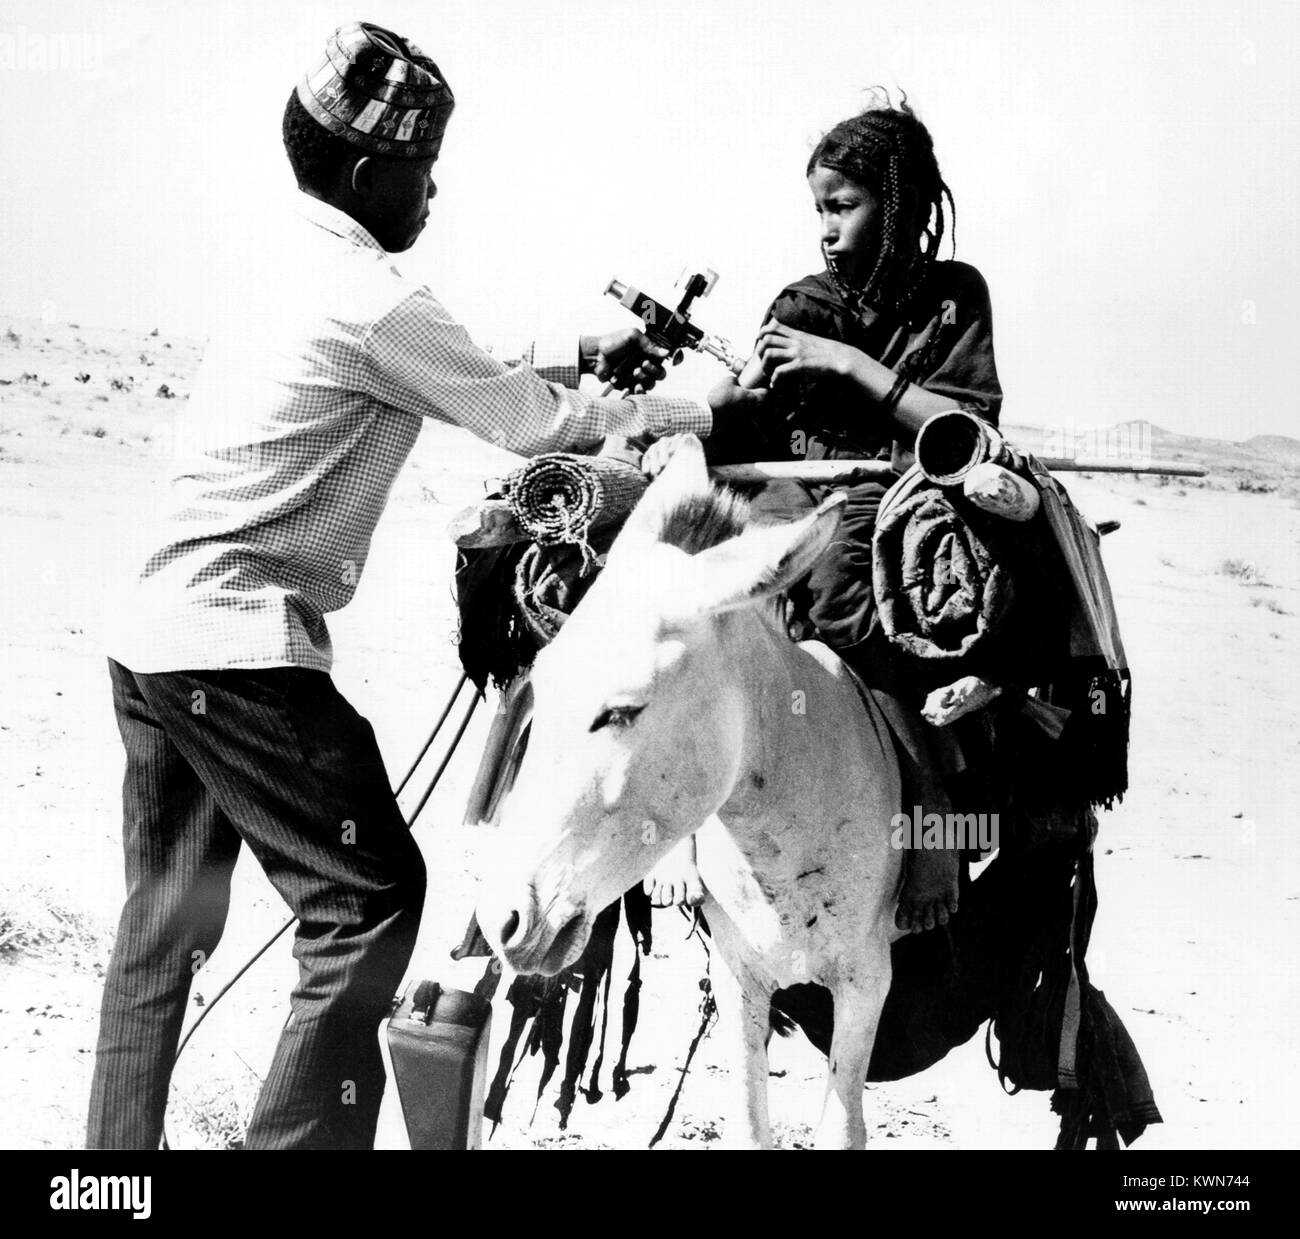 Questa tribù nomadi Tuareg ragazza sta ricevendo una vaccinazione di vaiolo nel Mali, in Africa occidentale, 1967. Immagine cortesia CDC. Foto Stock